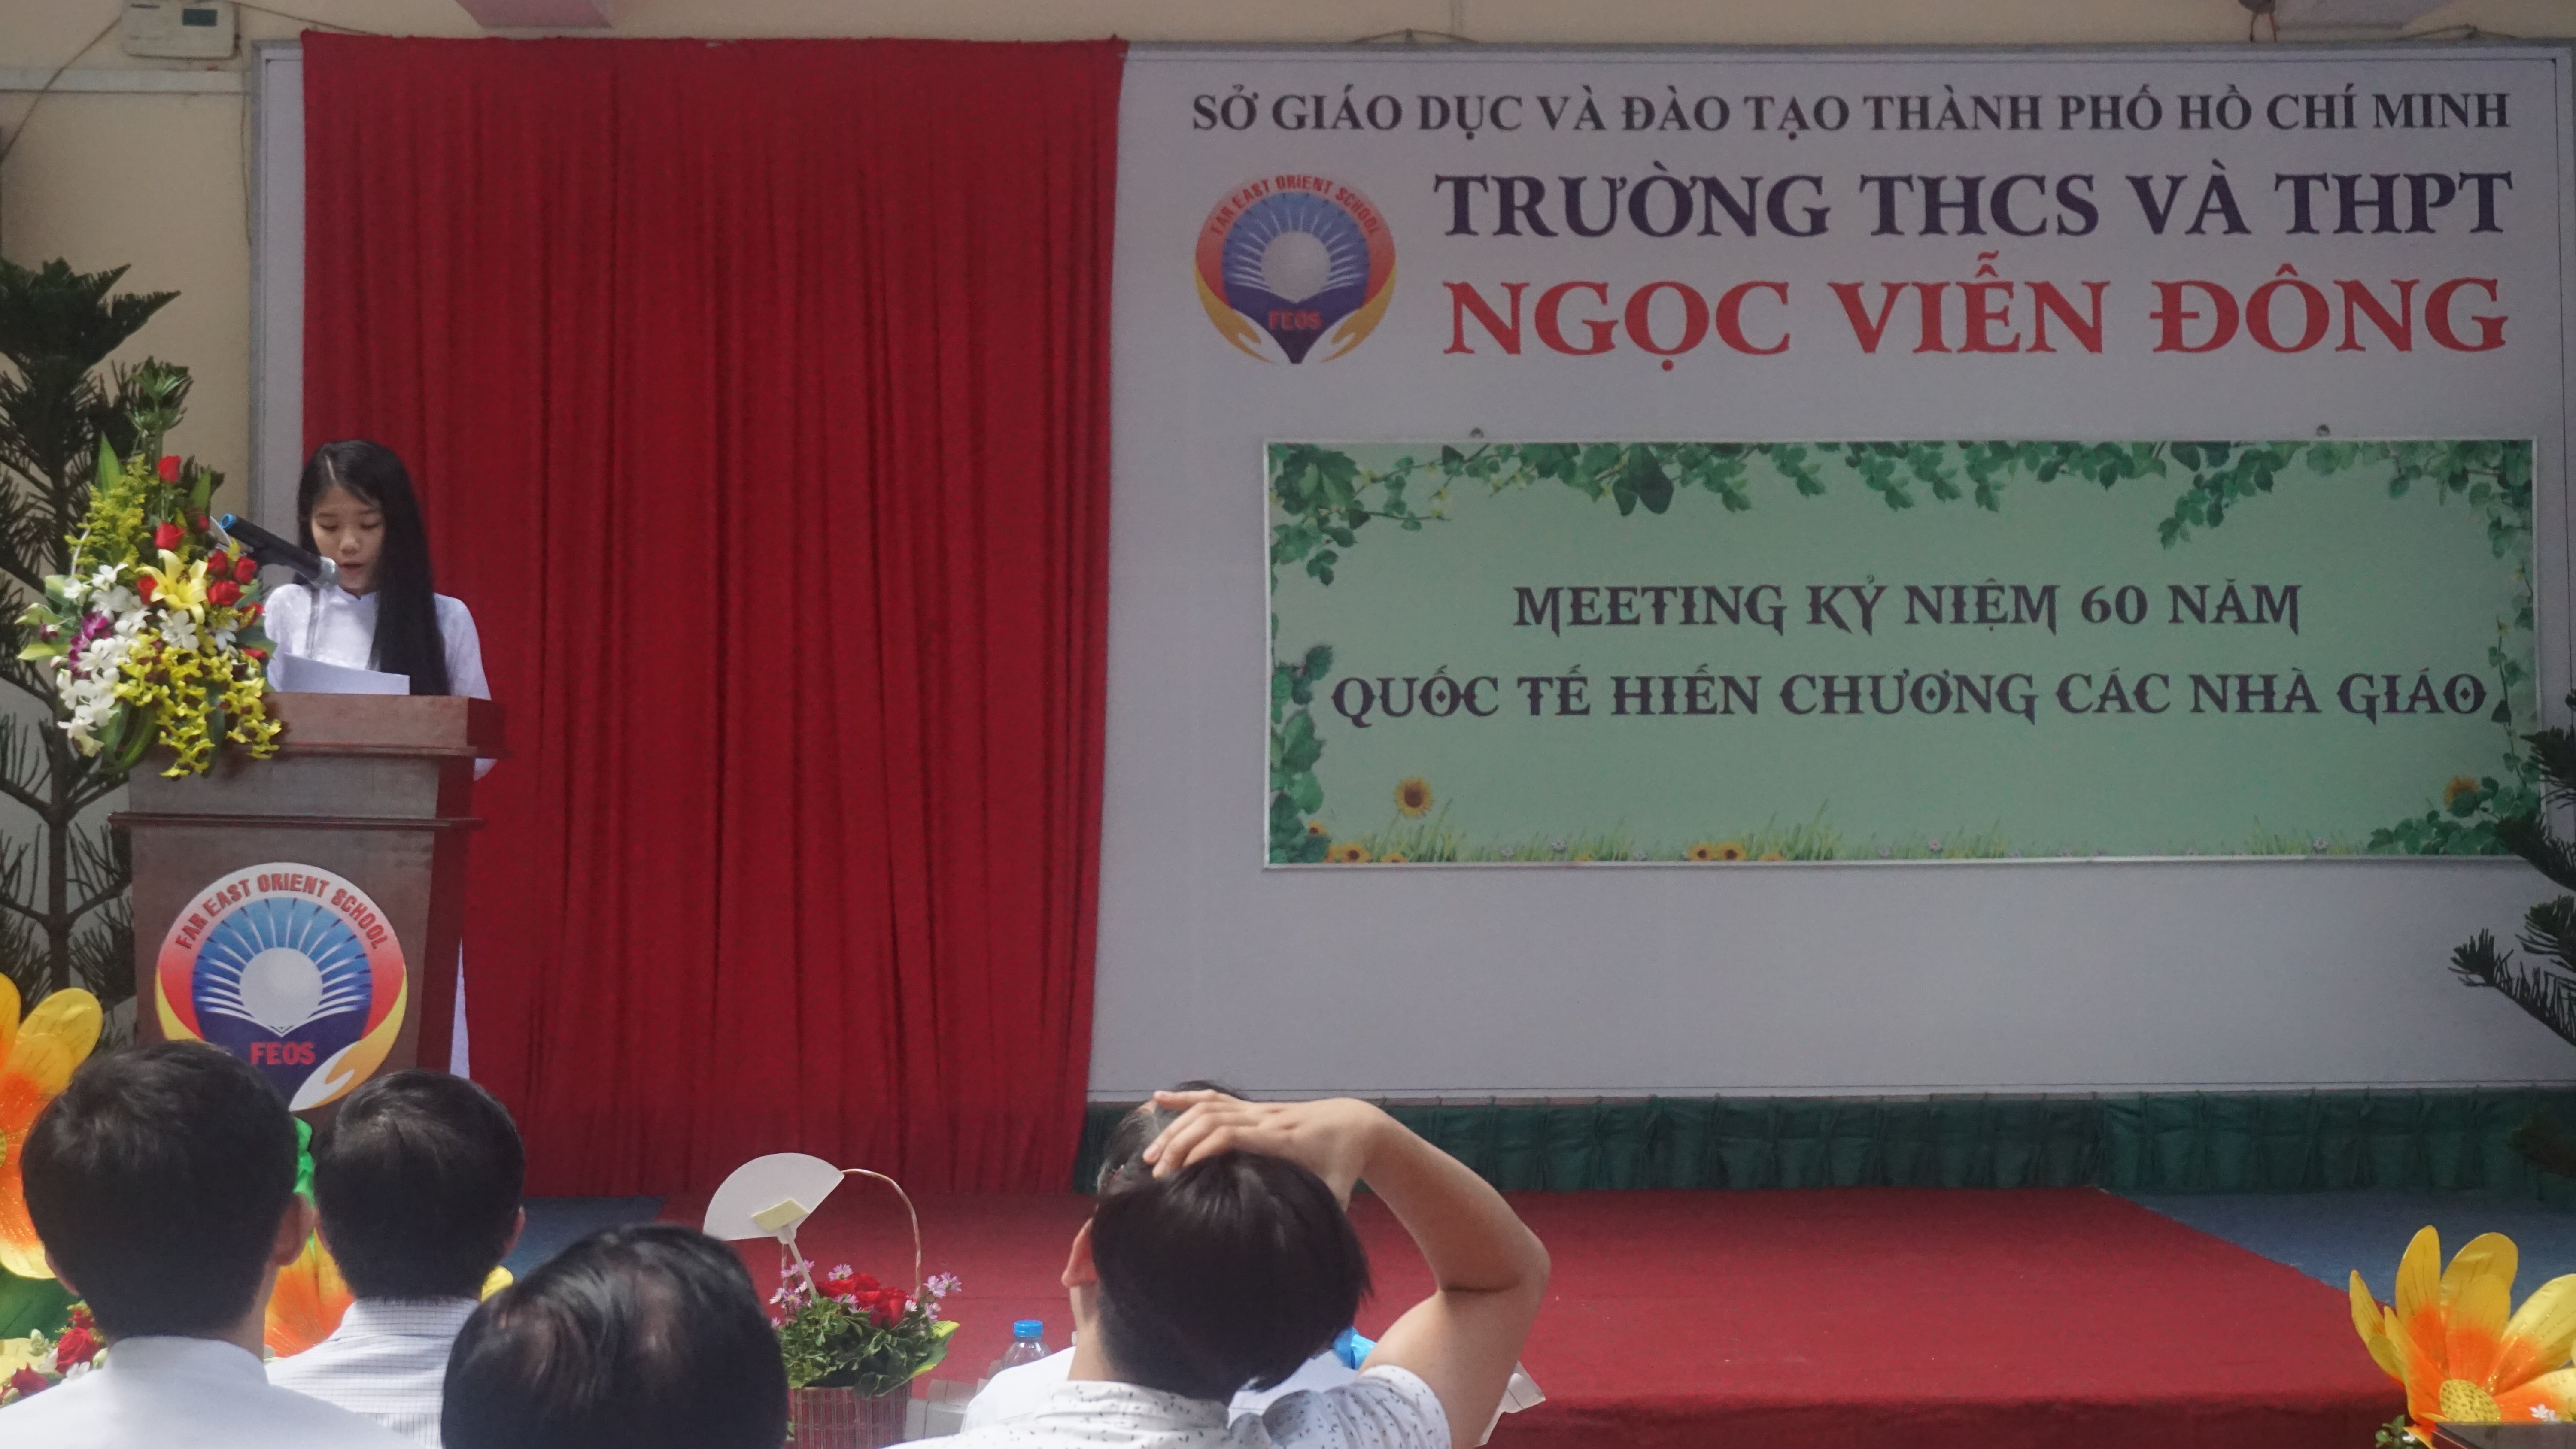 Học sinh Nguyễn Thoại Ngân lớp 10B trường THCS và THPT Ngọc Viễn Đông phát biểu cảm nghĩ nhân ngày Nhà giáo Việt nam 20-11